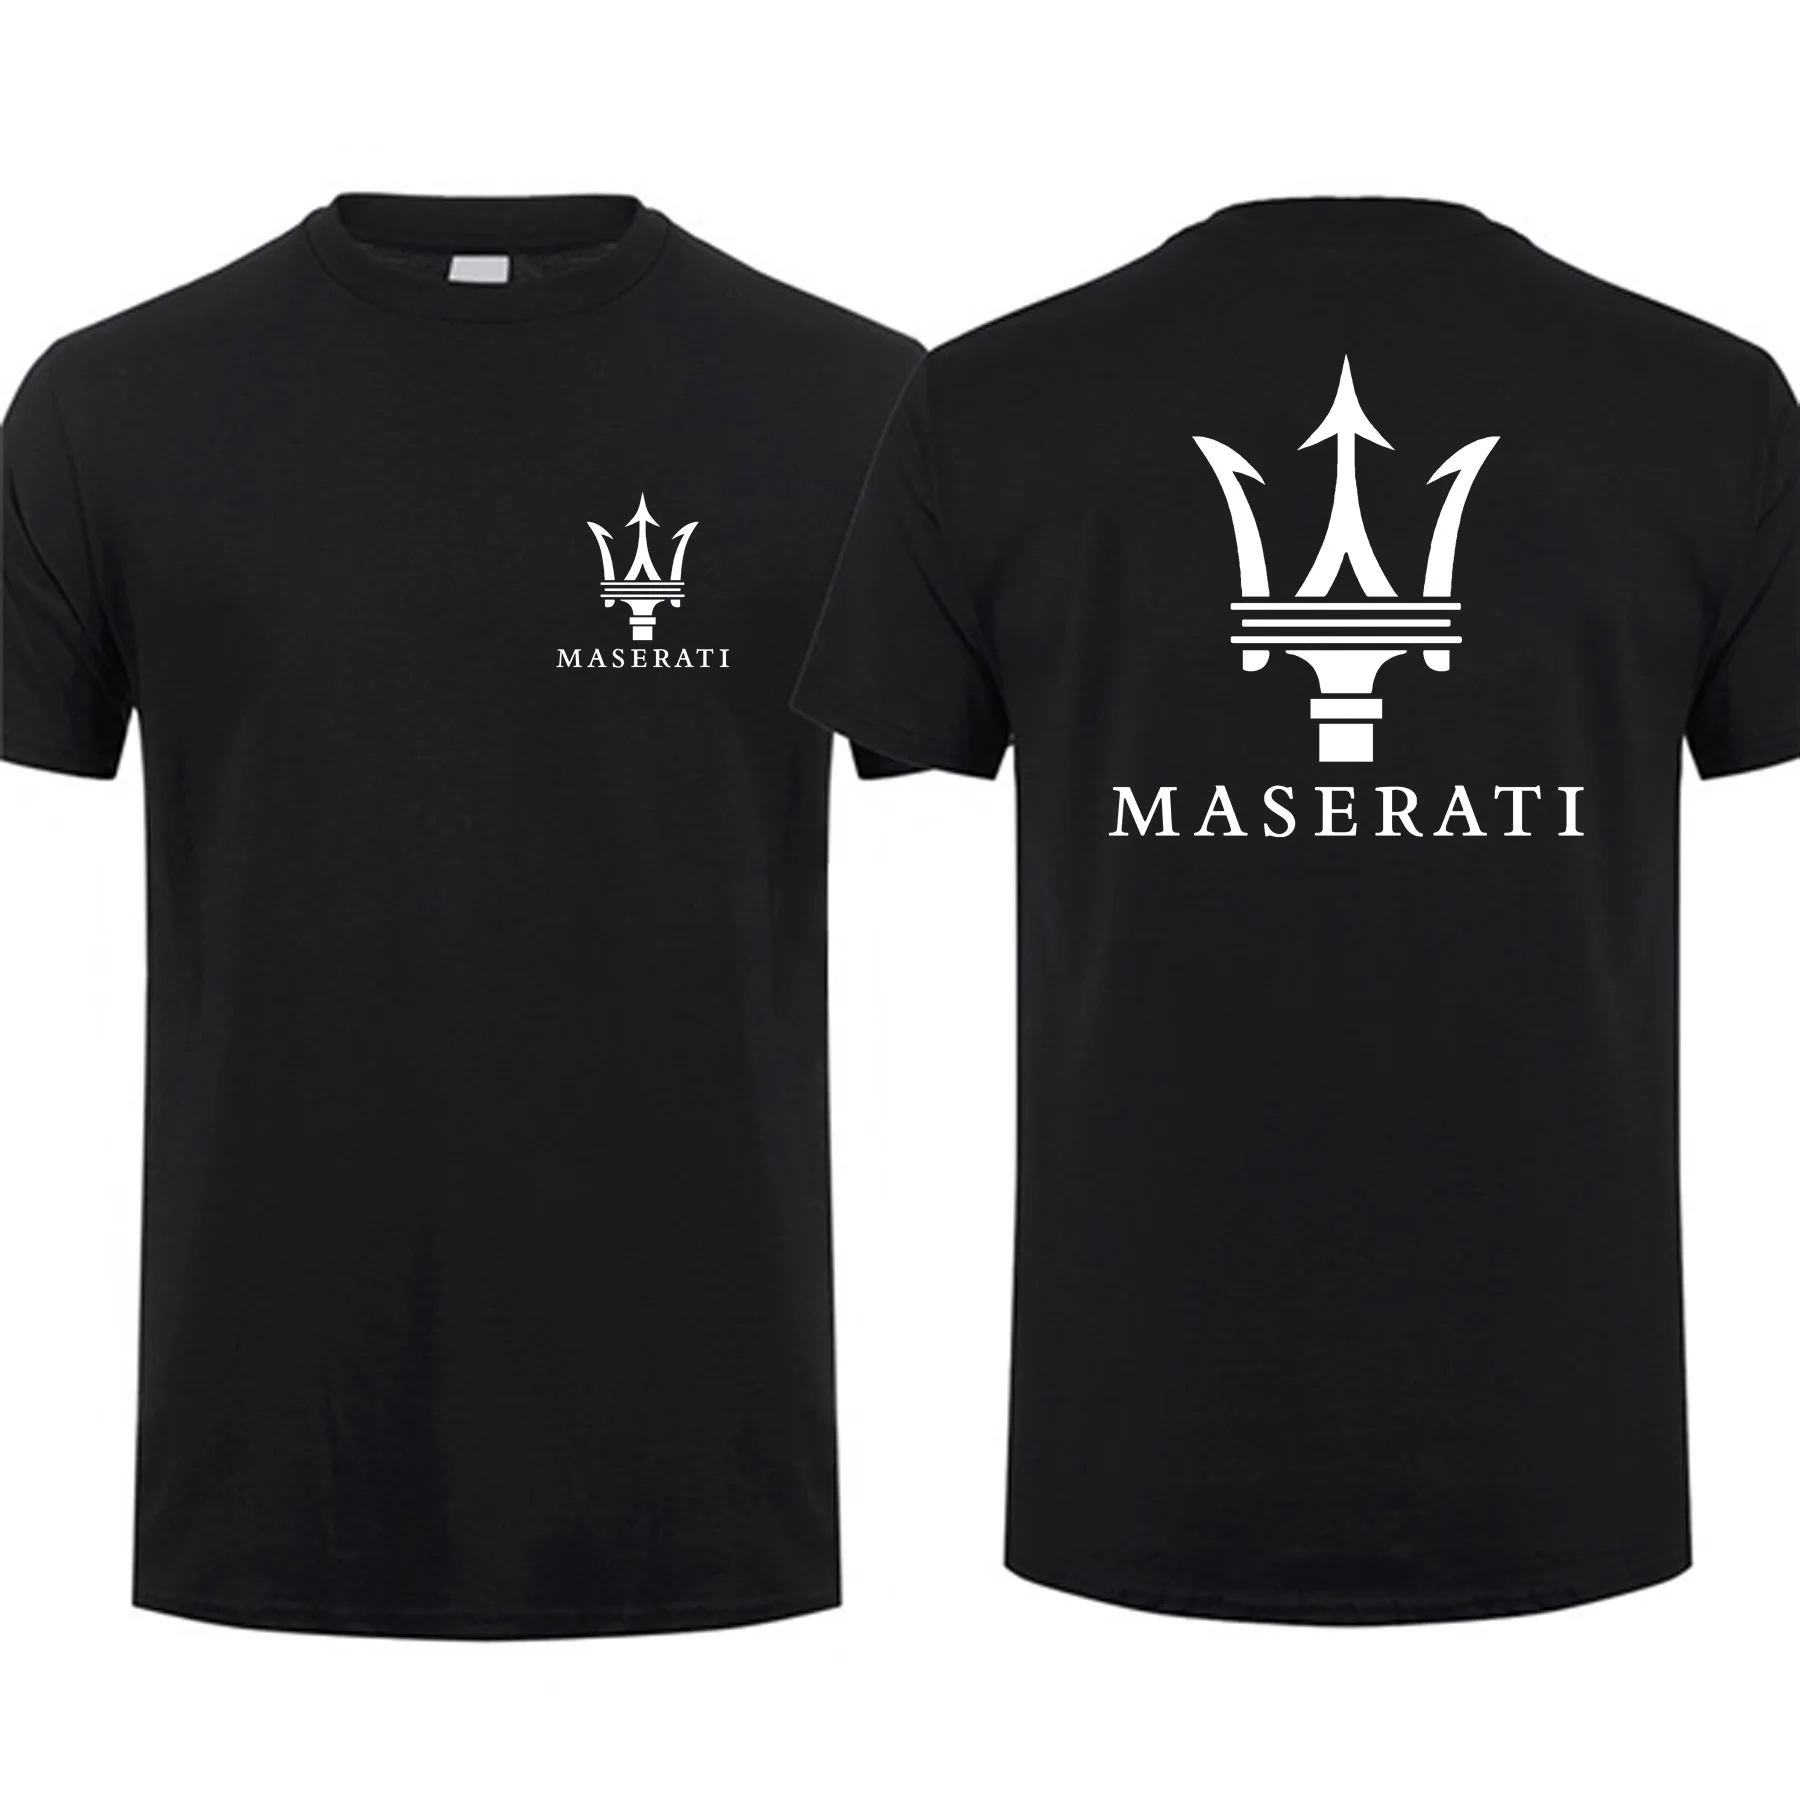 

Удивительные футболки, мужская классическая футболка с логотипом Maserati, двухсторонняя Повседневная футболка оверсайз, мужские футболки, гр...